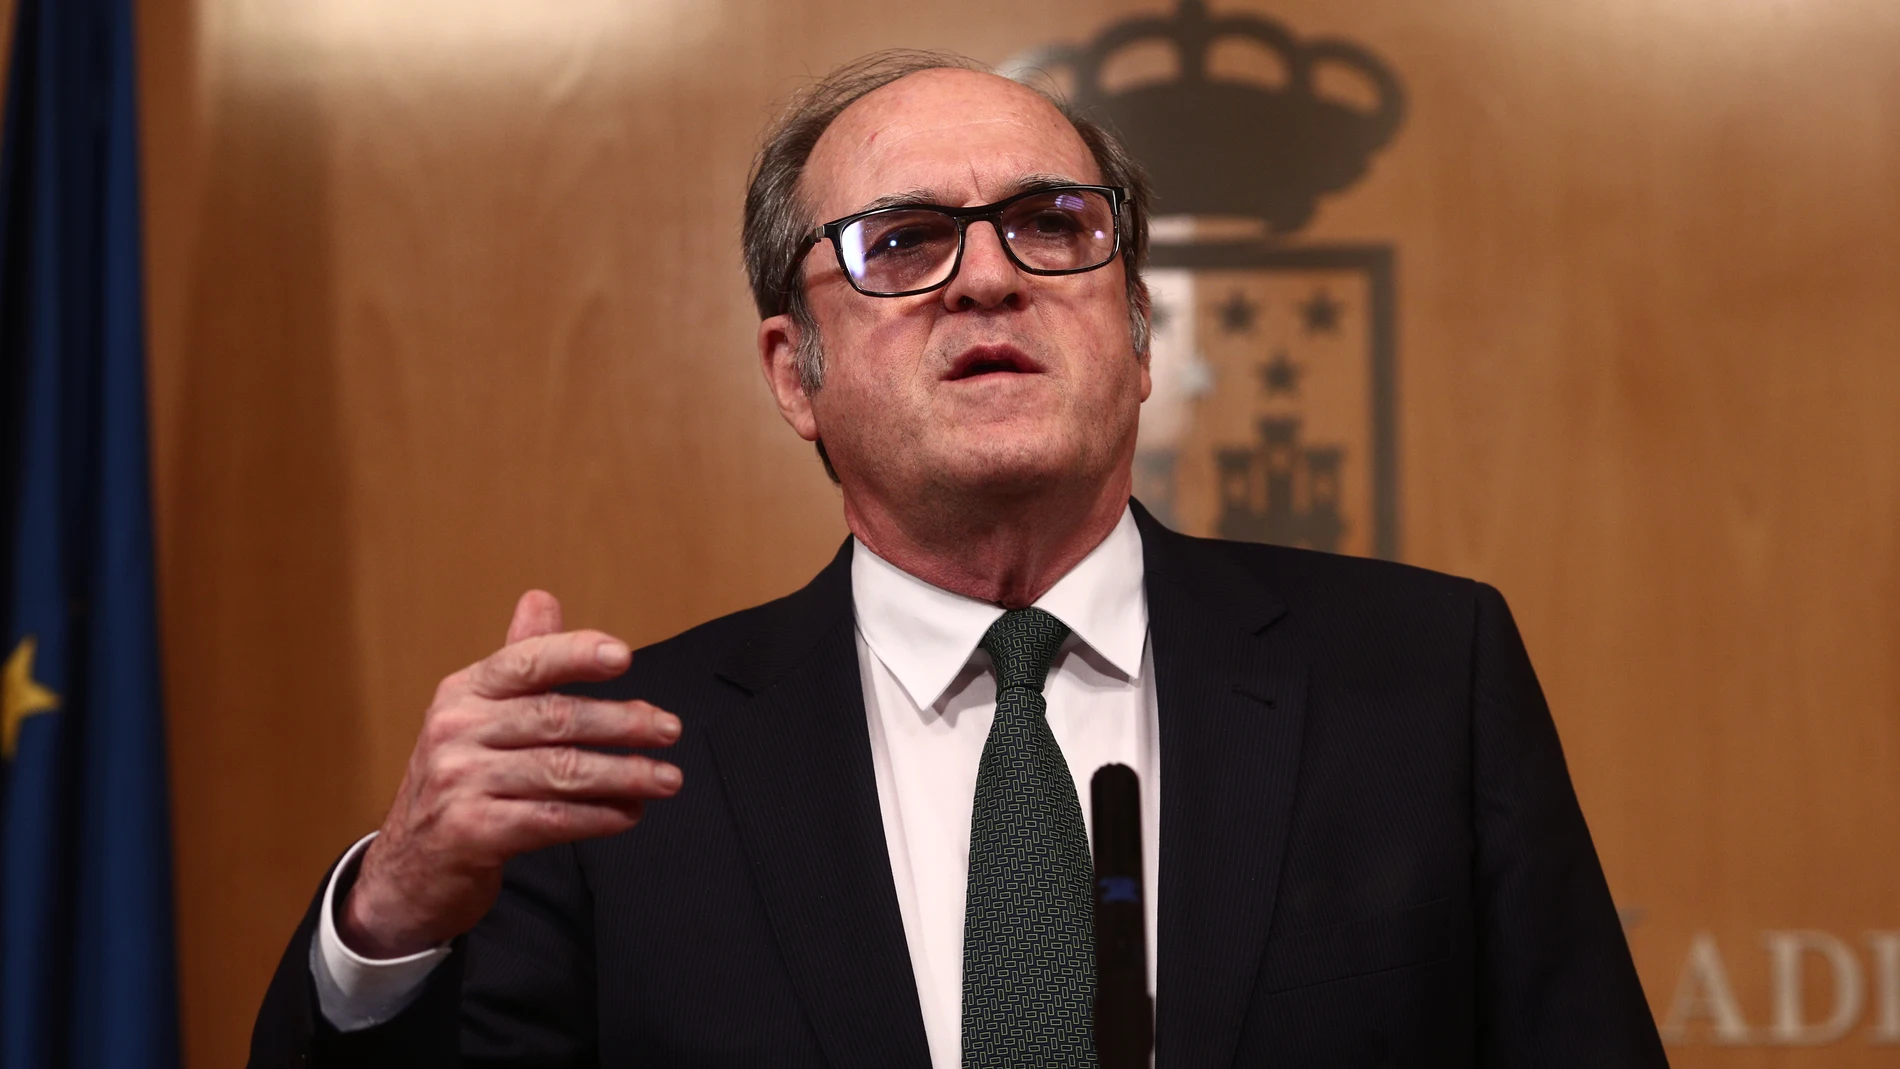 El portavoz del PSOE, Ángel Gabilondo, durante una reunión de la Junta de Portavoces de la Asamblea de Madrid